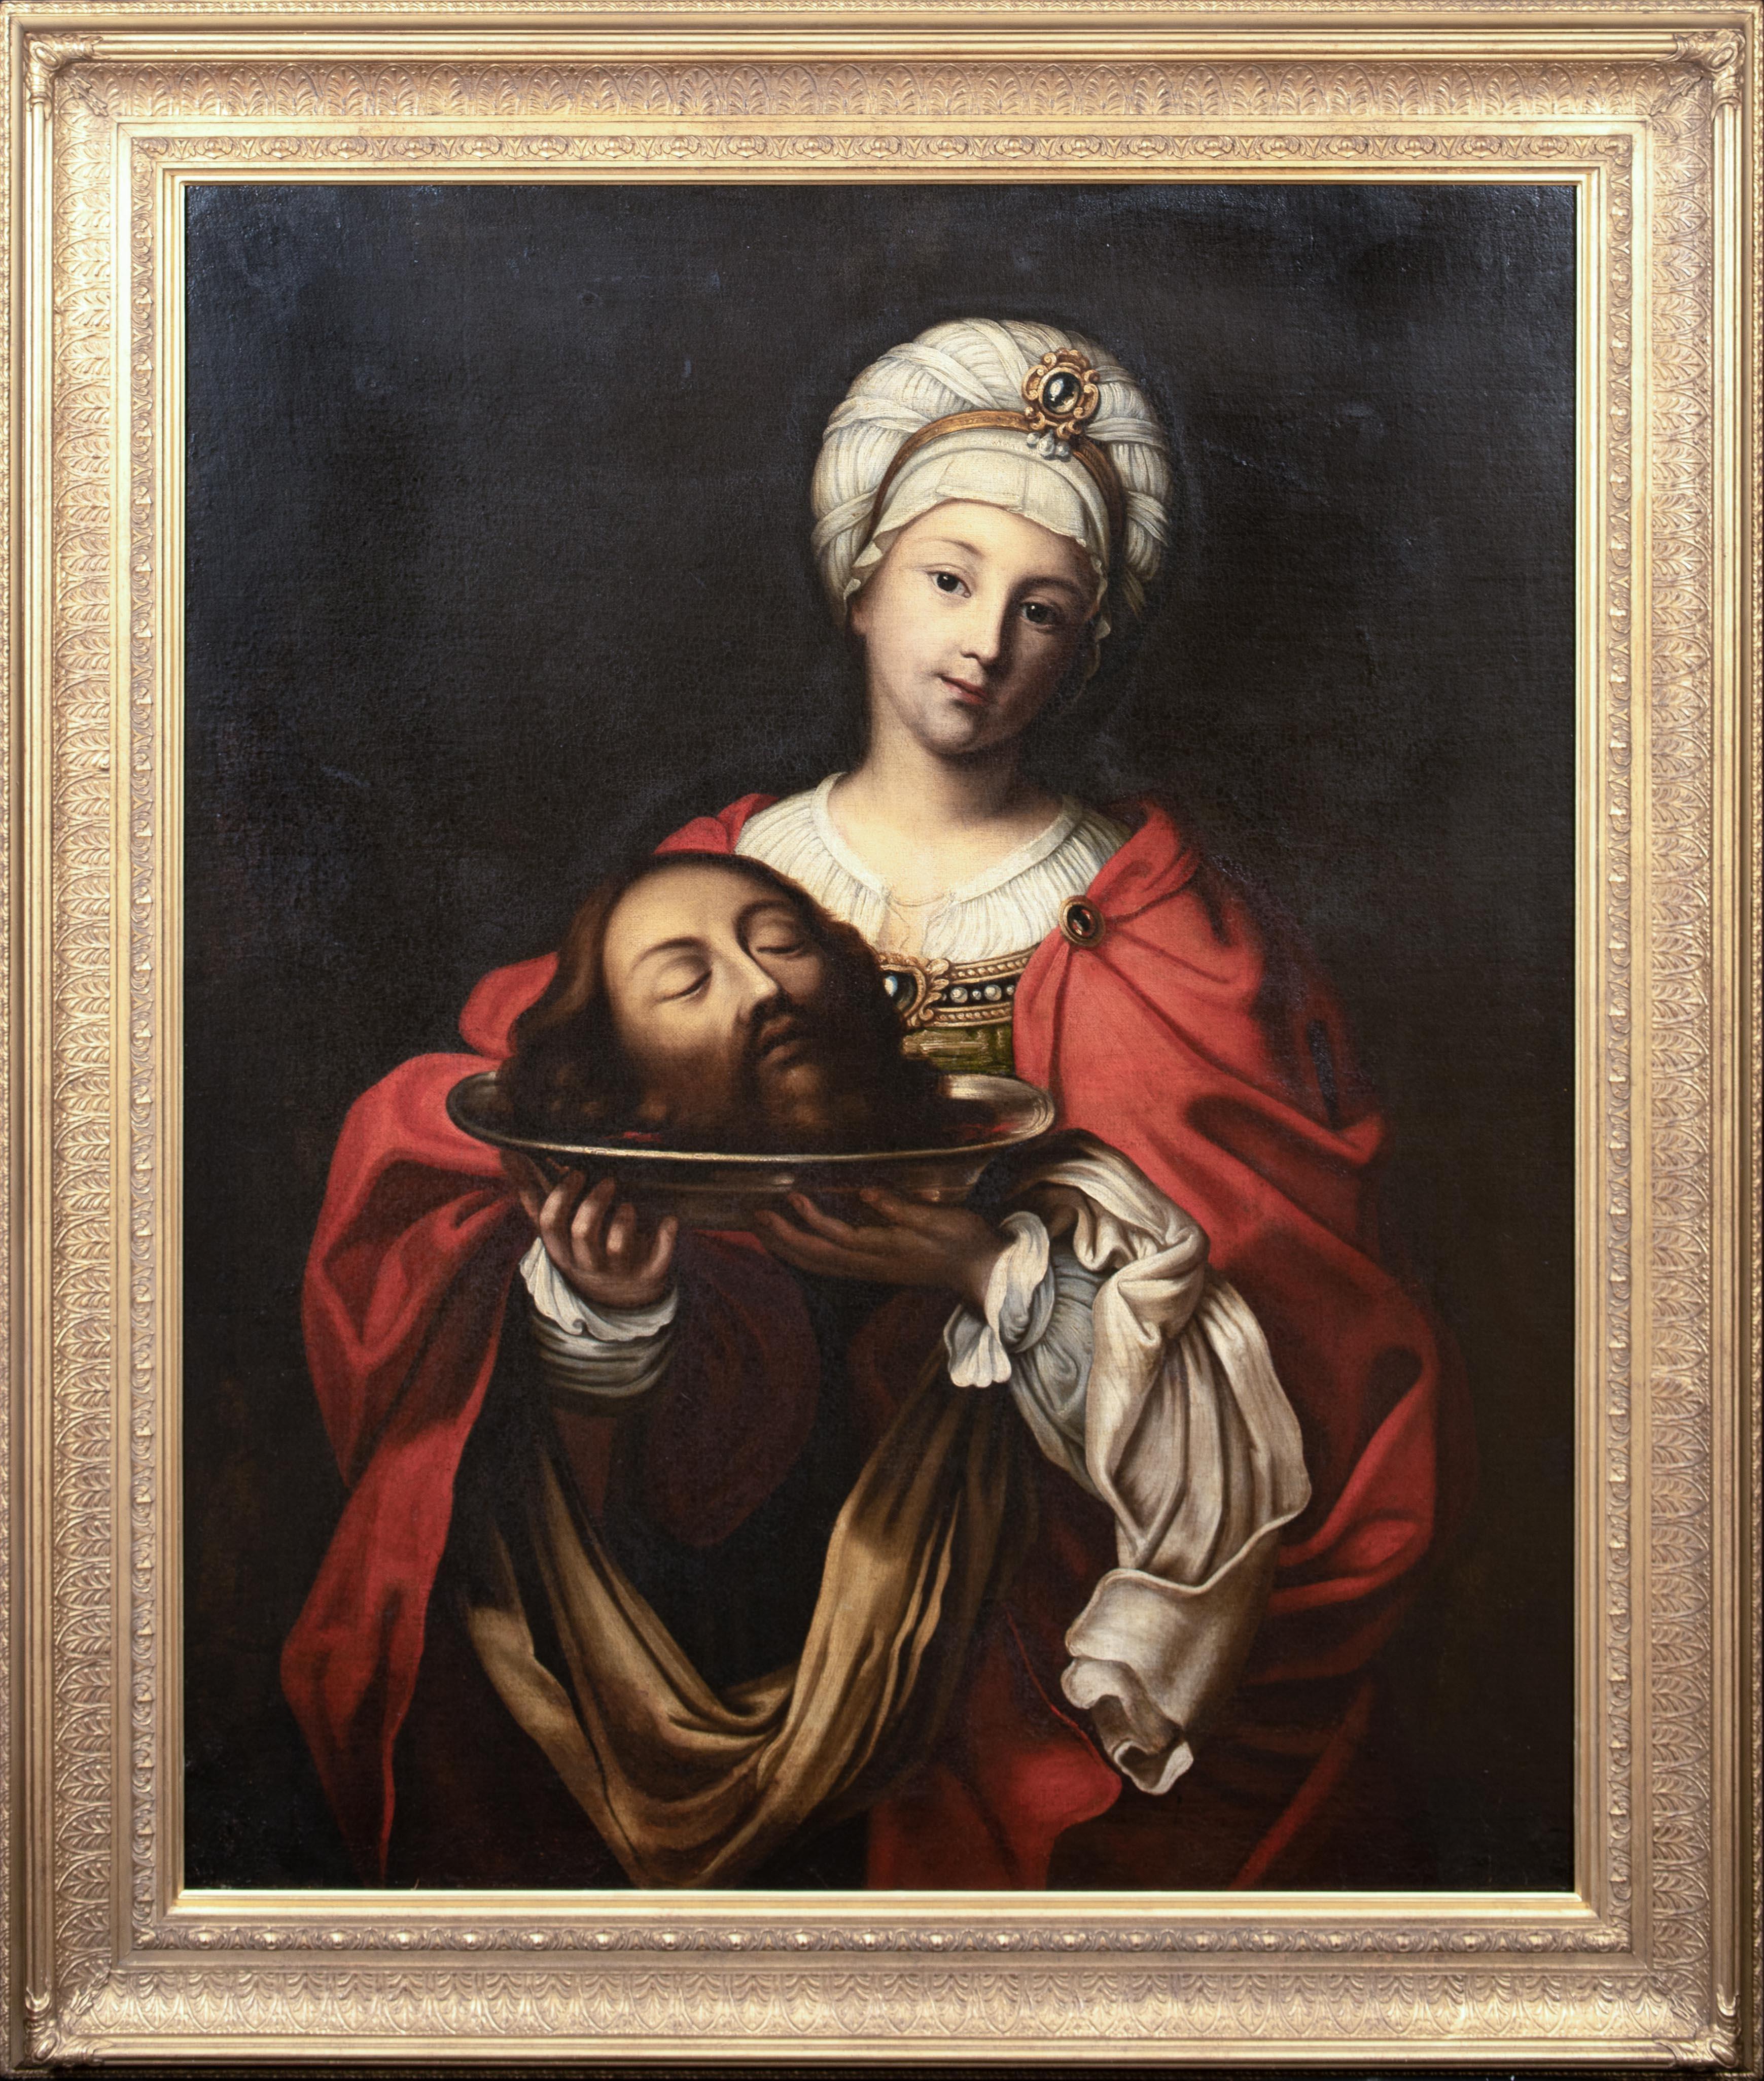 Salome mit dem Kopf des heiligen Johannes des Baptisten, 17. Jahrhundert  Studio von GUIDO RENI  – Painting von Guido Reni